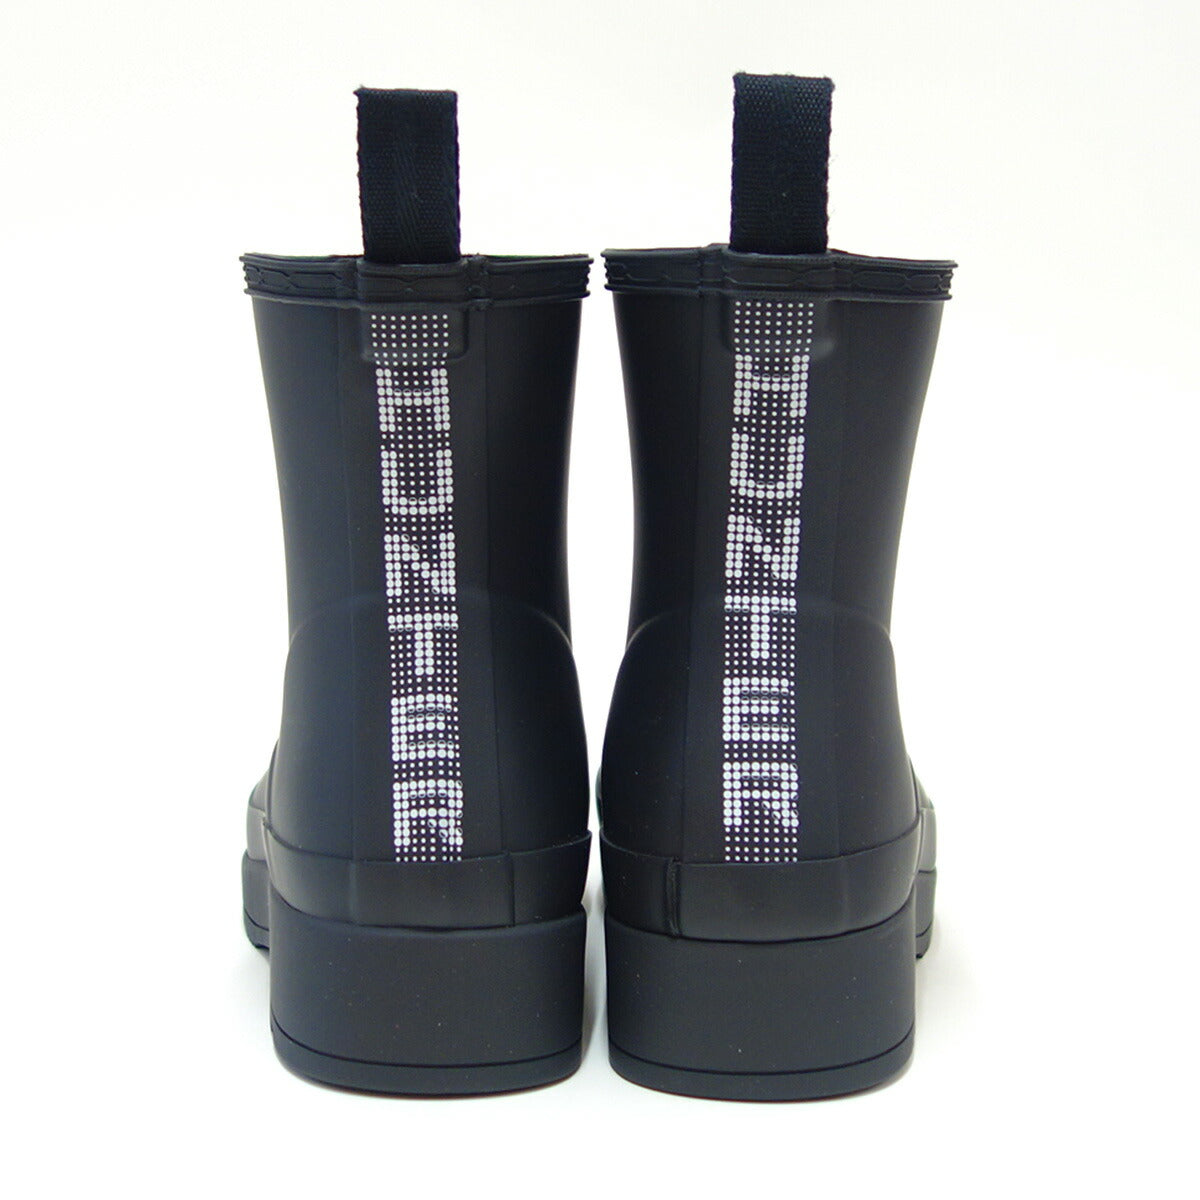 ハンターHUNTERUFS4006RMA（レディース）プレイショートハンタードットプリントバックストラップブーツ：ブラック防水ブーツラバーソールレイン長靴「靴」